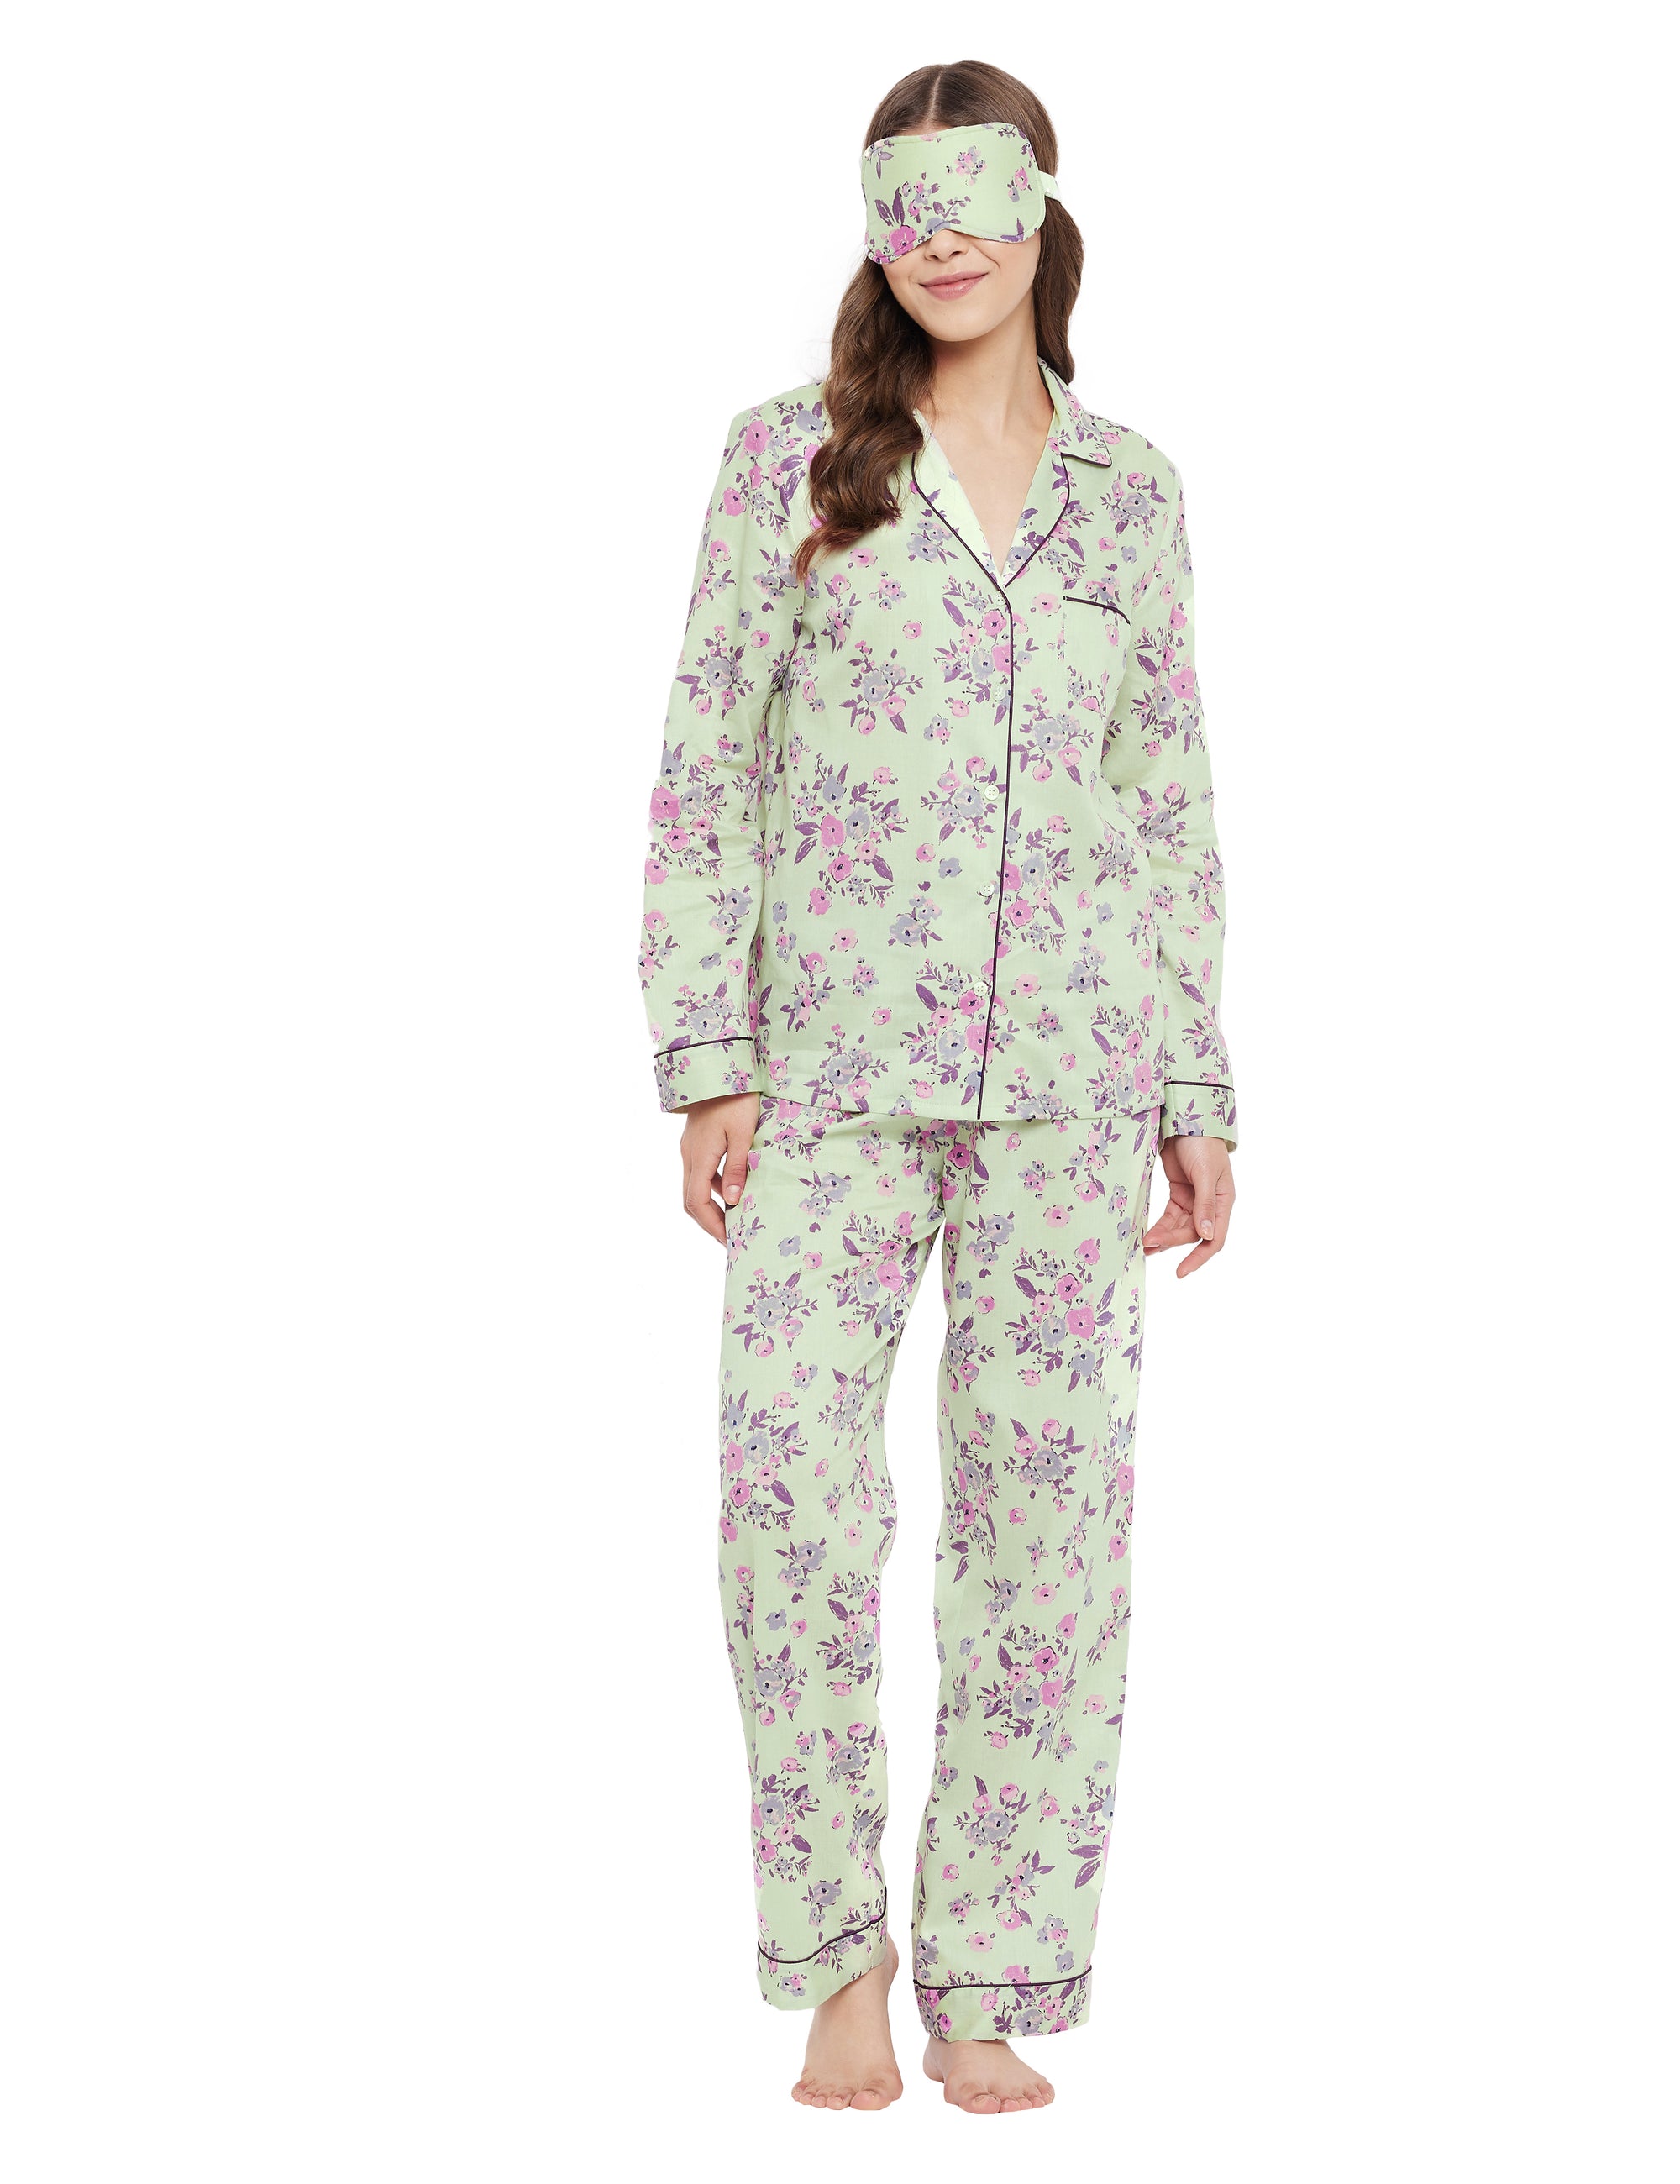 Lyla Cotton Satin Woven Printed Pajama Set Pajamas 49.00 Indigo Paisley